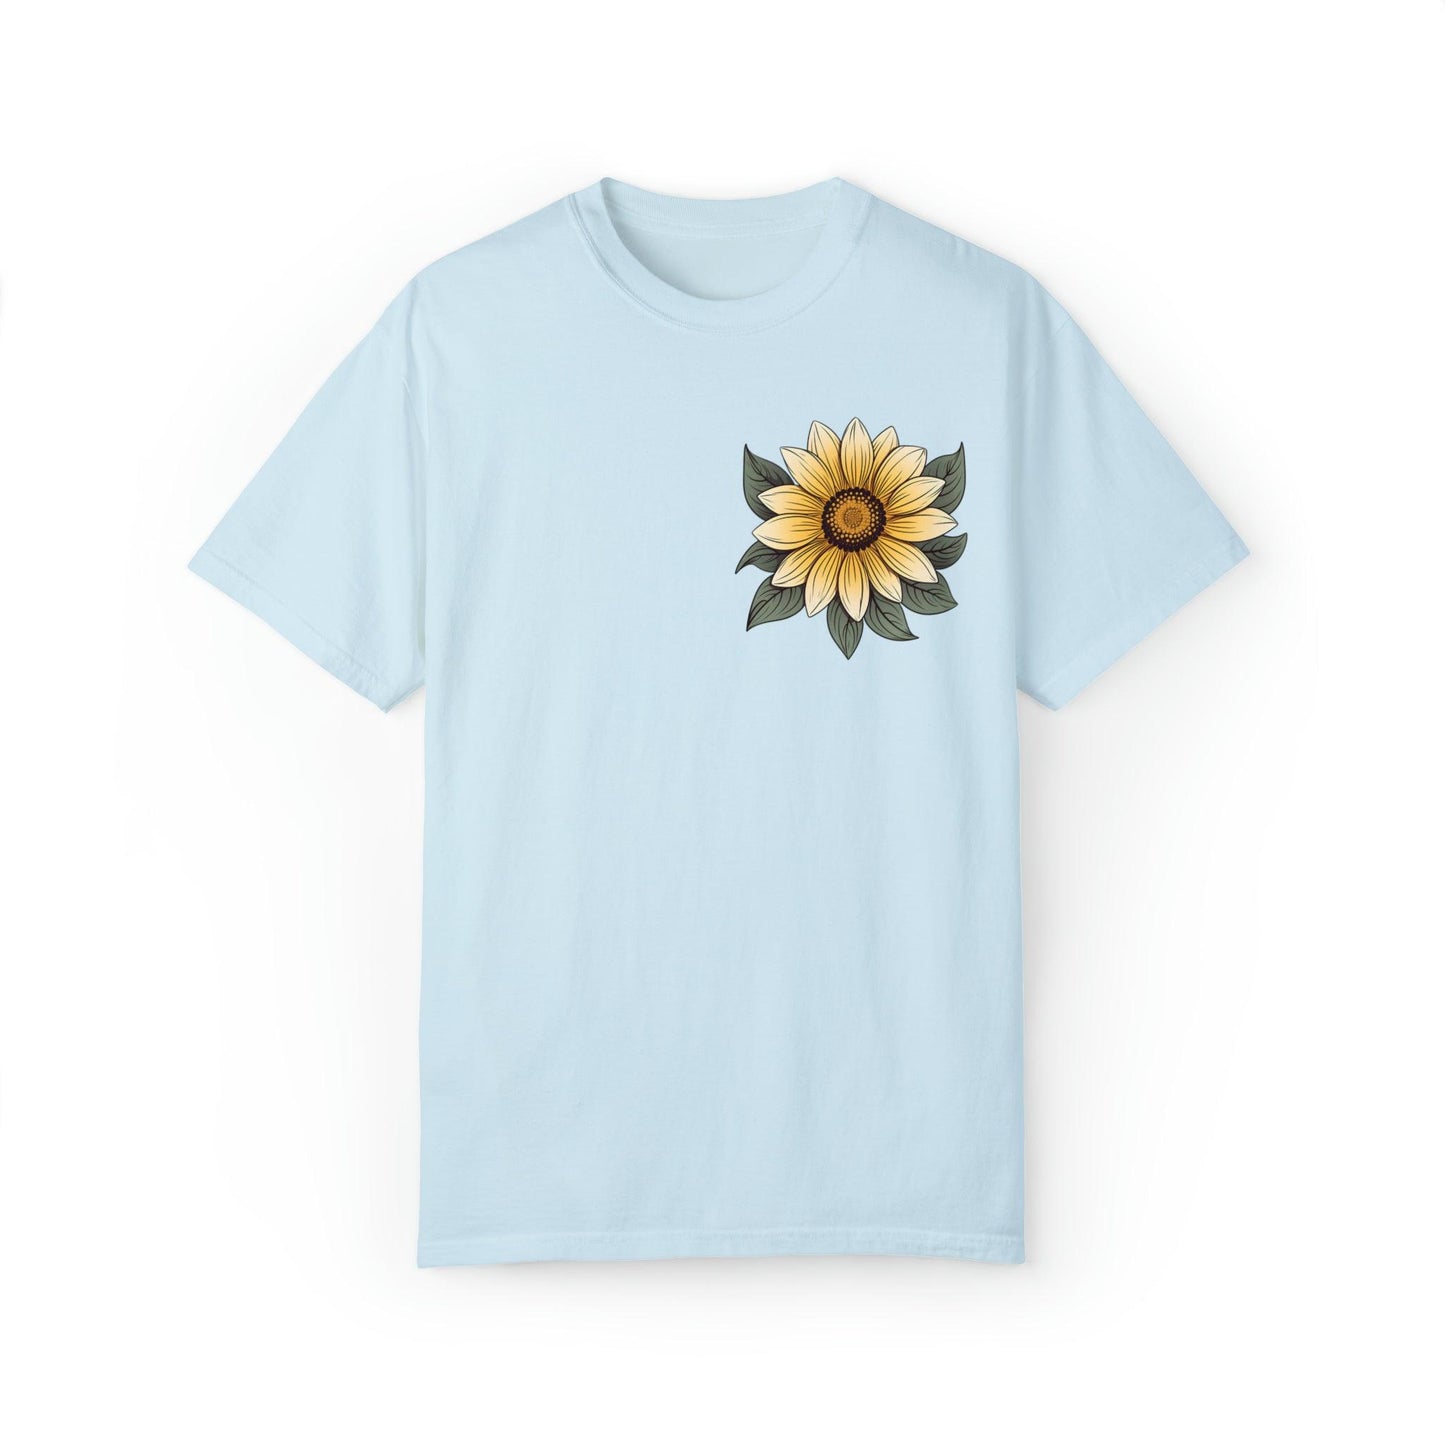 Sunflower Shirt Women Flower Shirt Aesthetic, Floral Graphic Tee Floral Shirt Flower T-shirt, Wild Flower Shirt Gift For Her Wildflower T-shirt